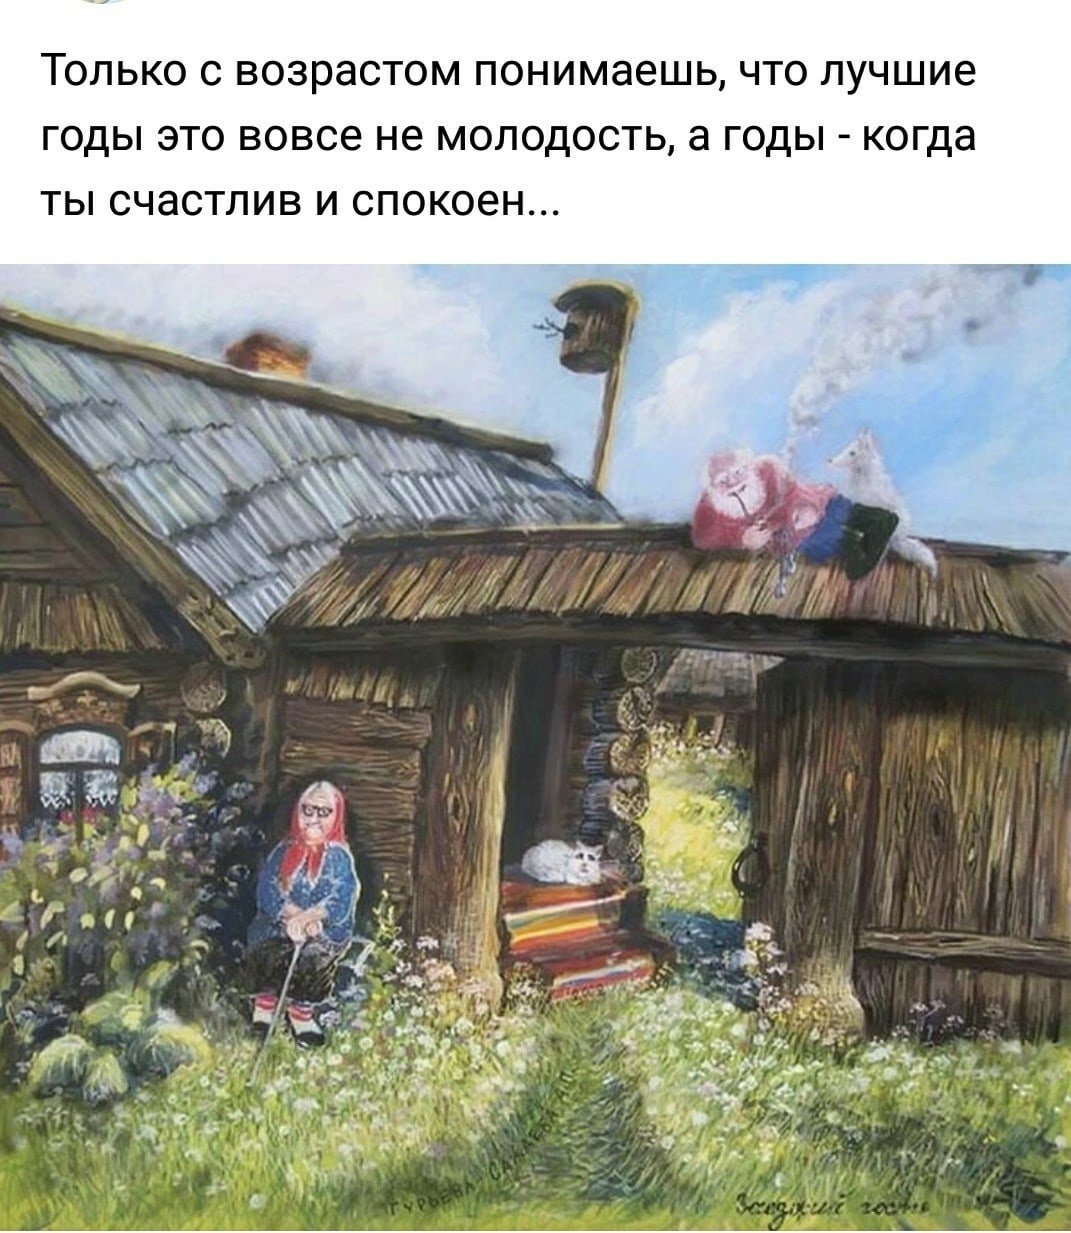 Эта простота деревенской жизни. Художник а. Гурьева-Сажаева.